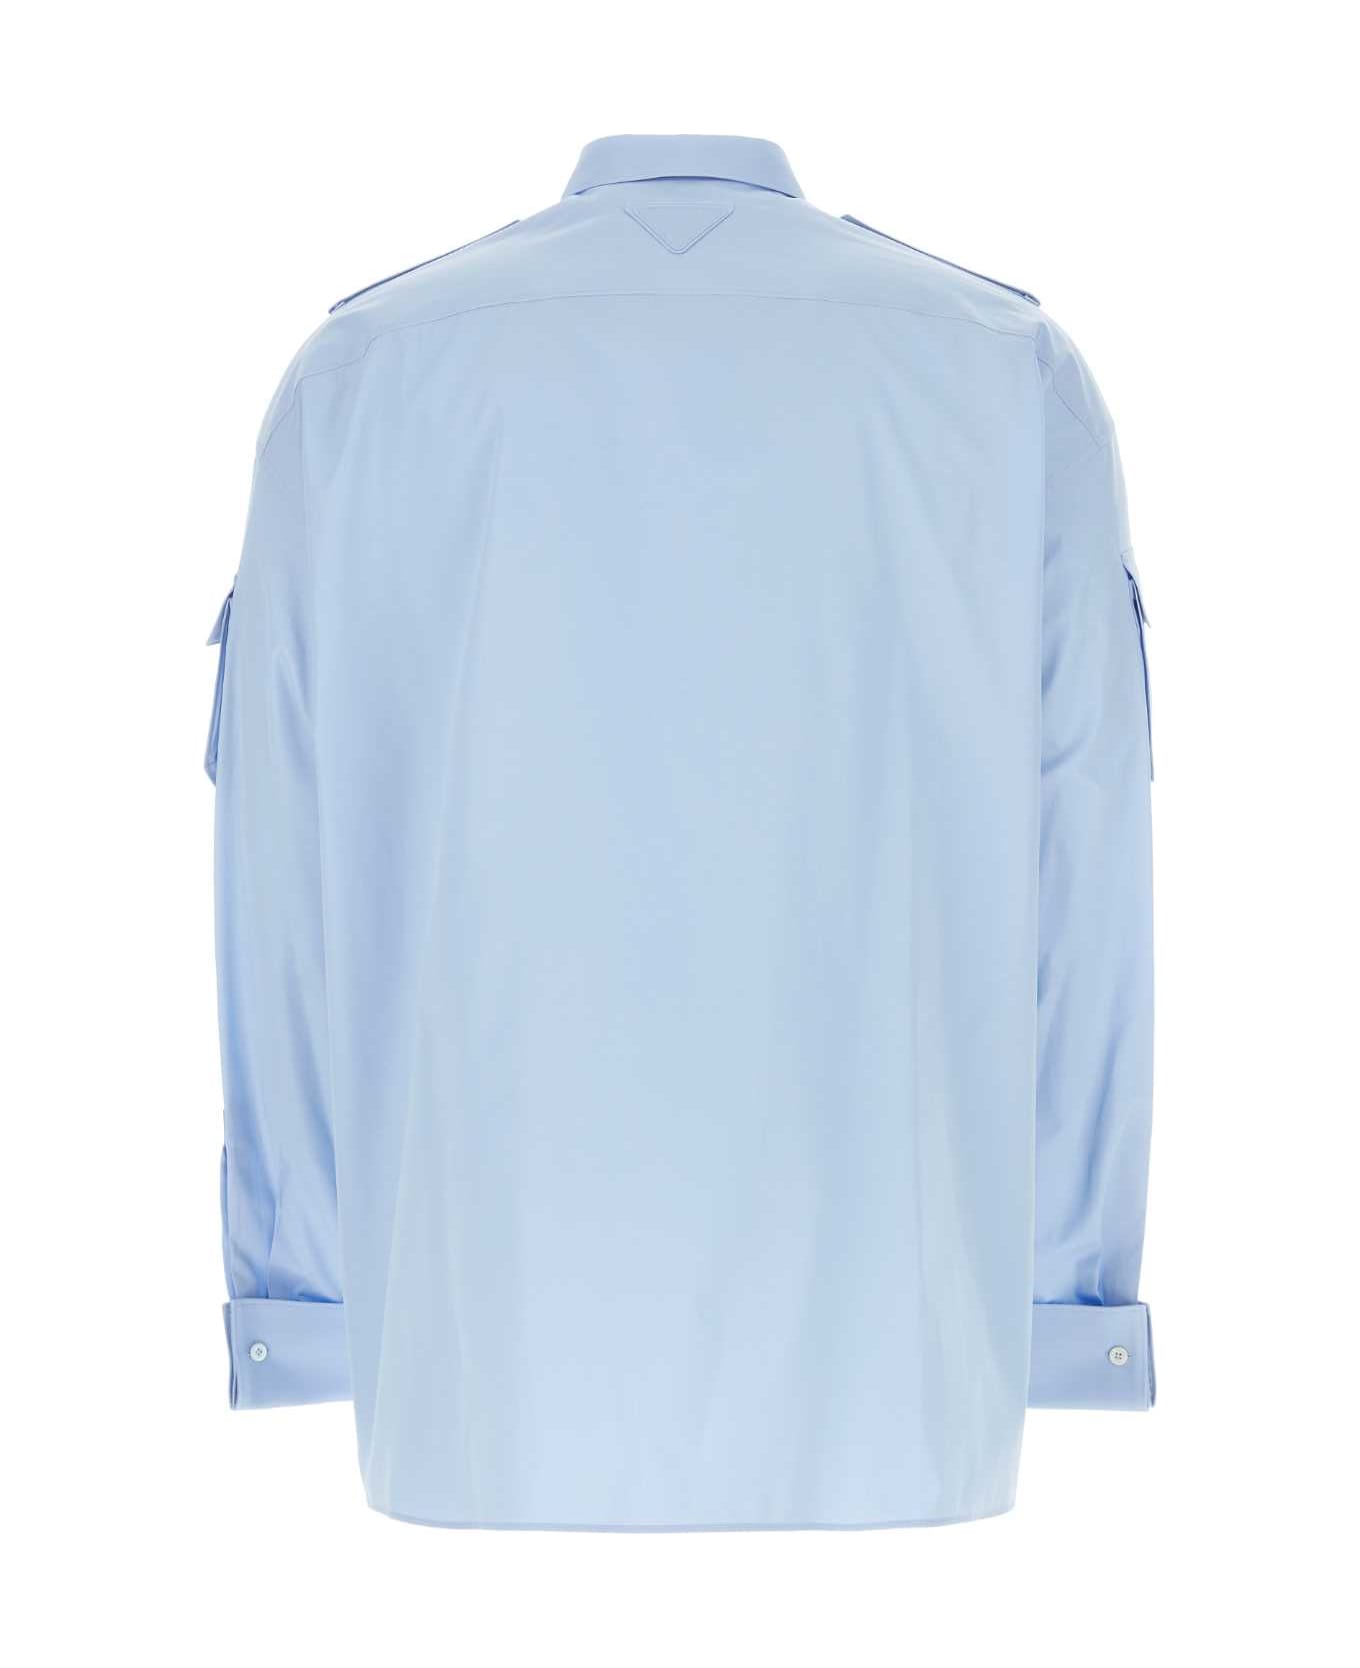 Prada Light-blue Poplin Oversize Shirt - CIELO